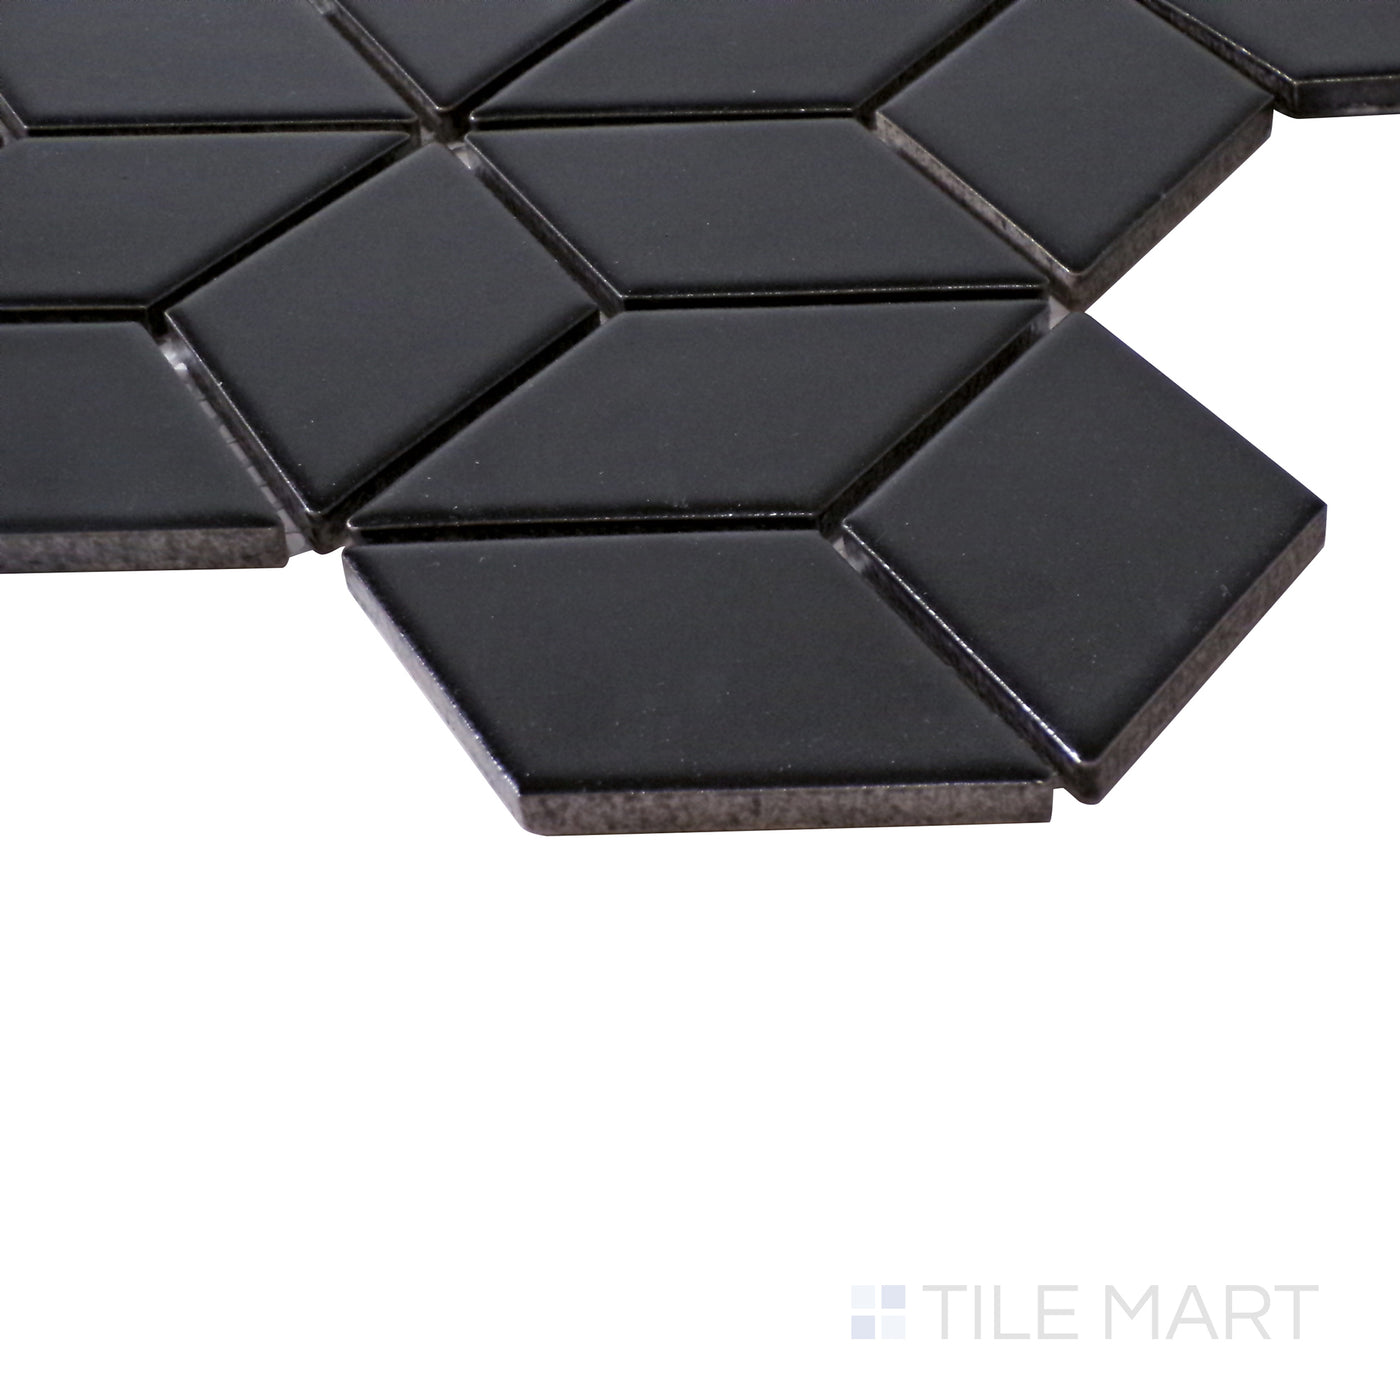 Shapes Cube Porcelain Mosaic 11X11 Black Matte